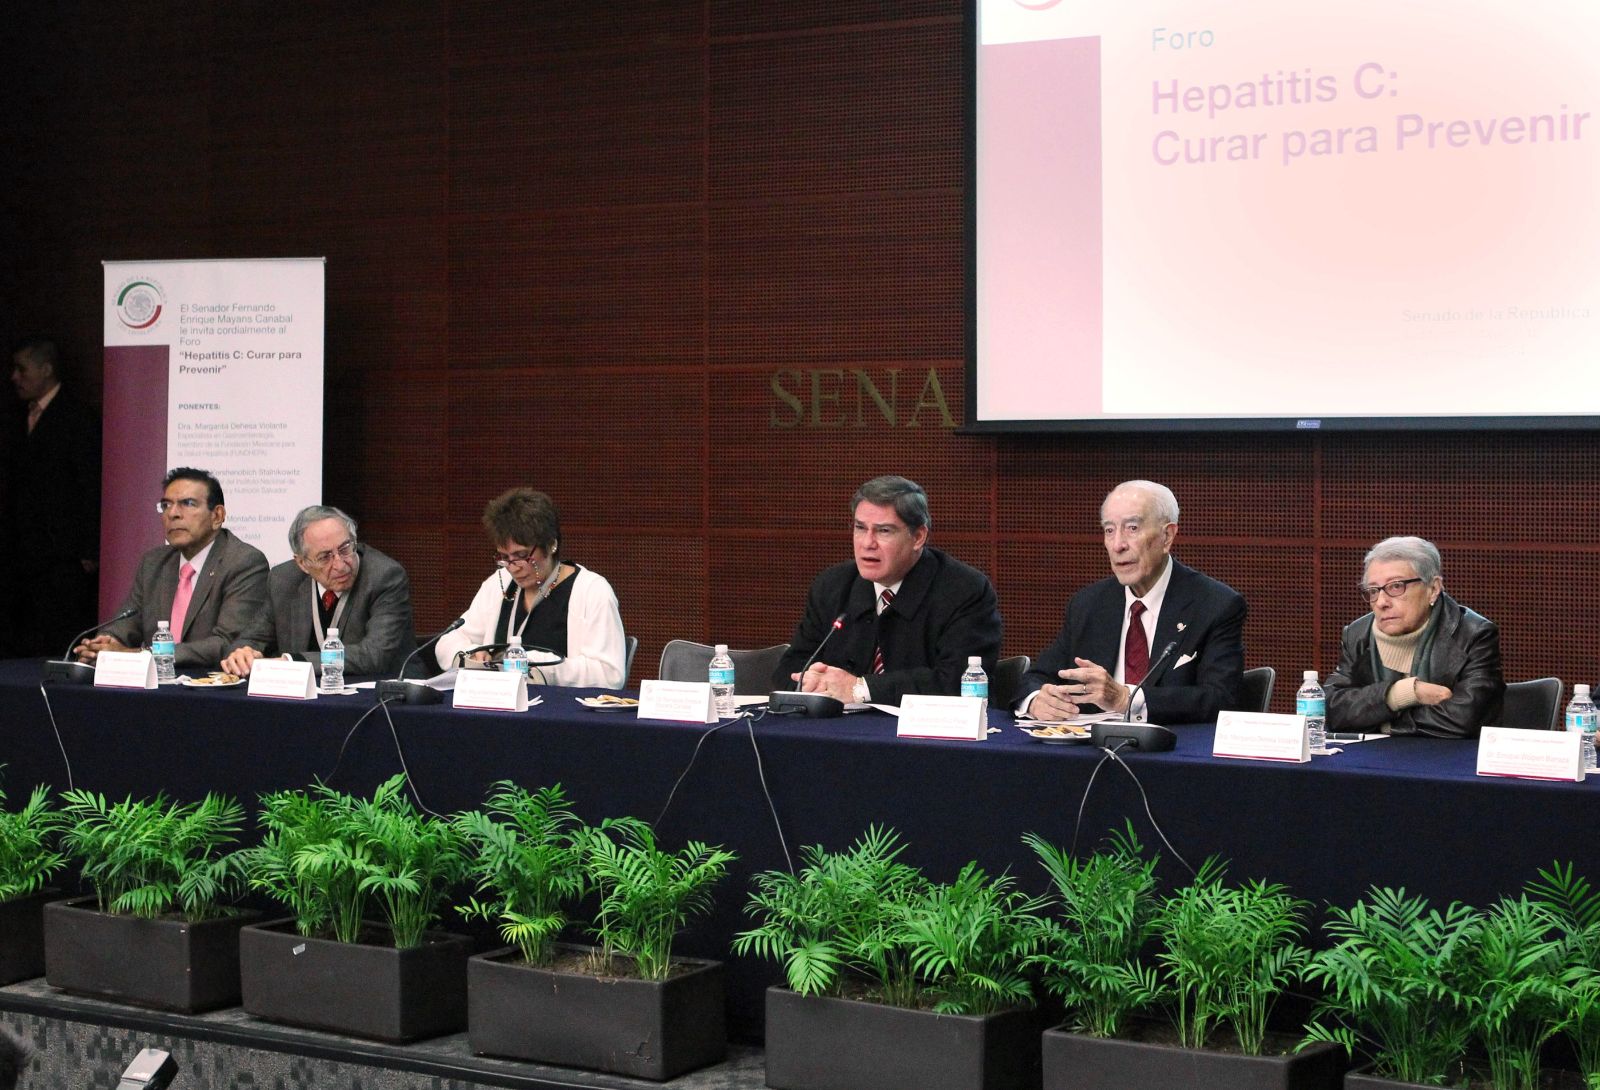 Fernando Mayans Canabal con ponentes en el foro “Hepatitis C: curar para prevenir”